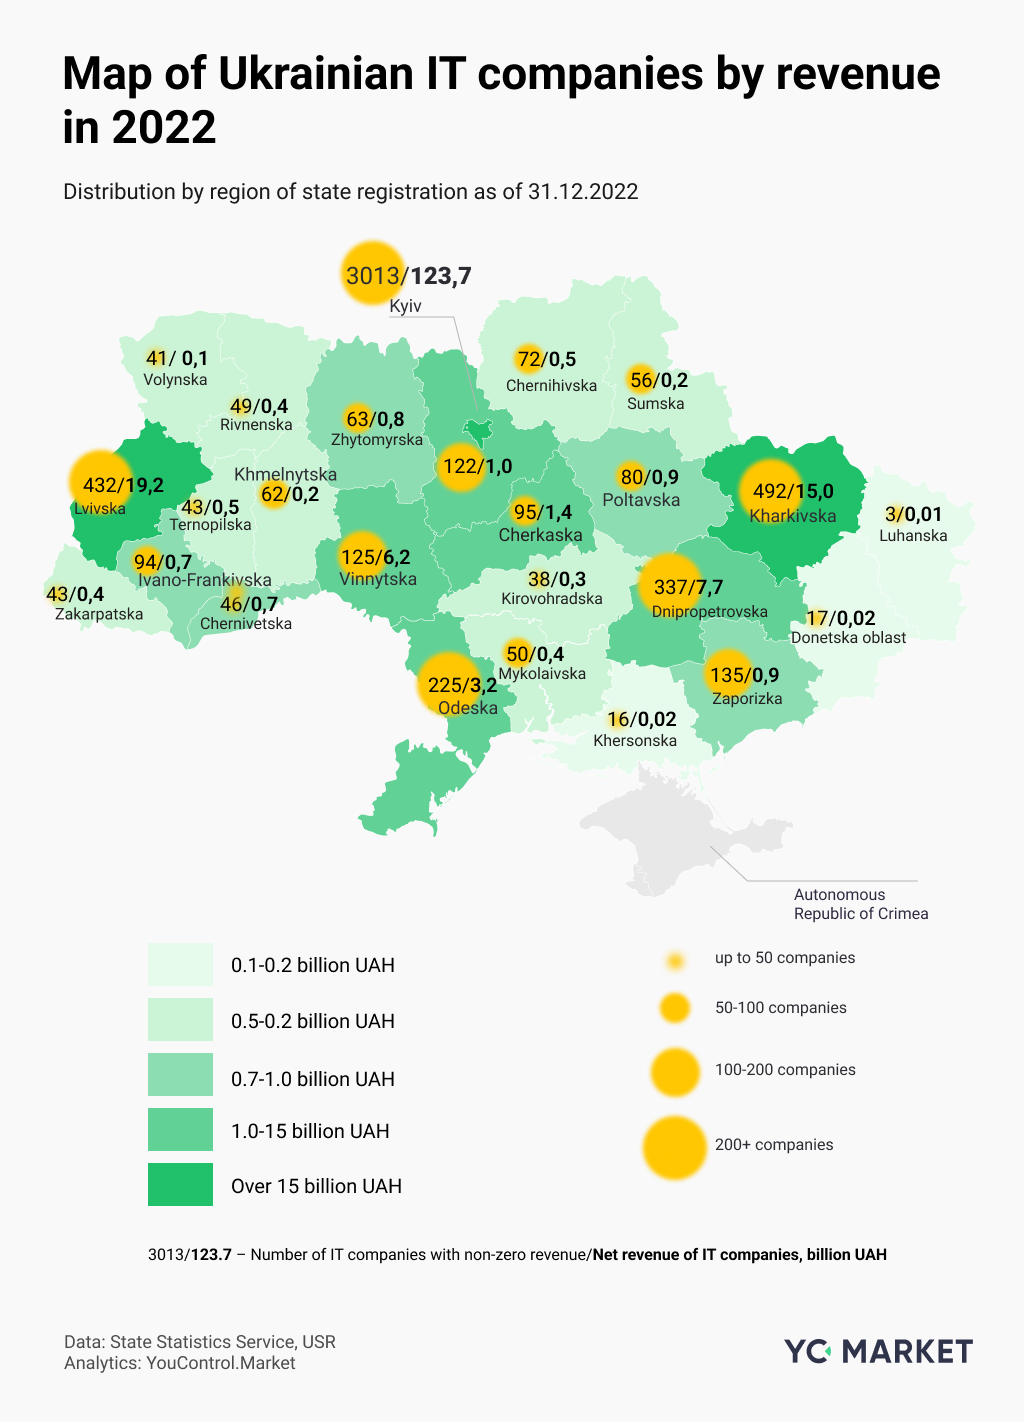 Map of Ukrainian IT companies by revenue in 2022